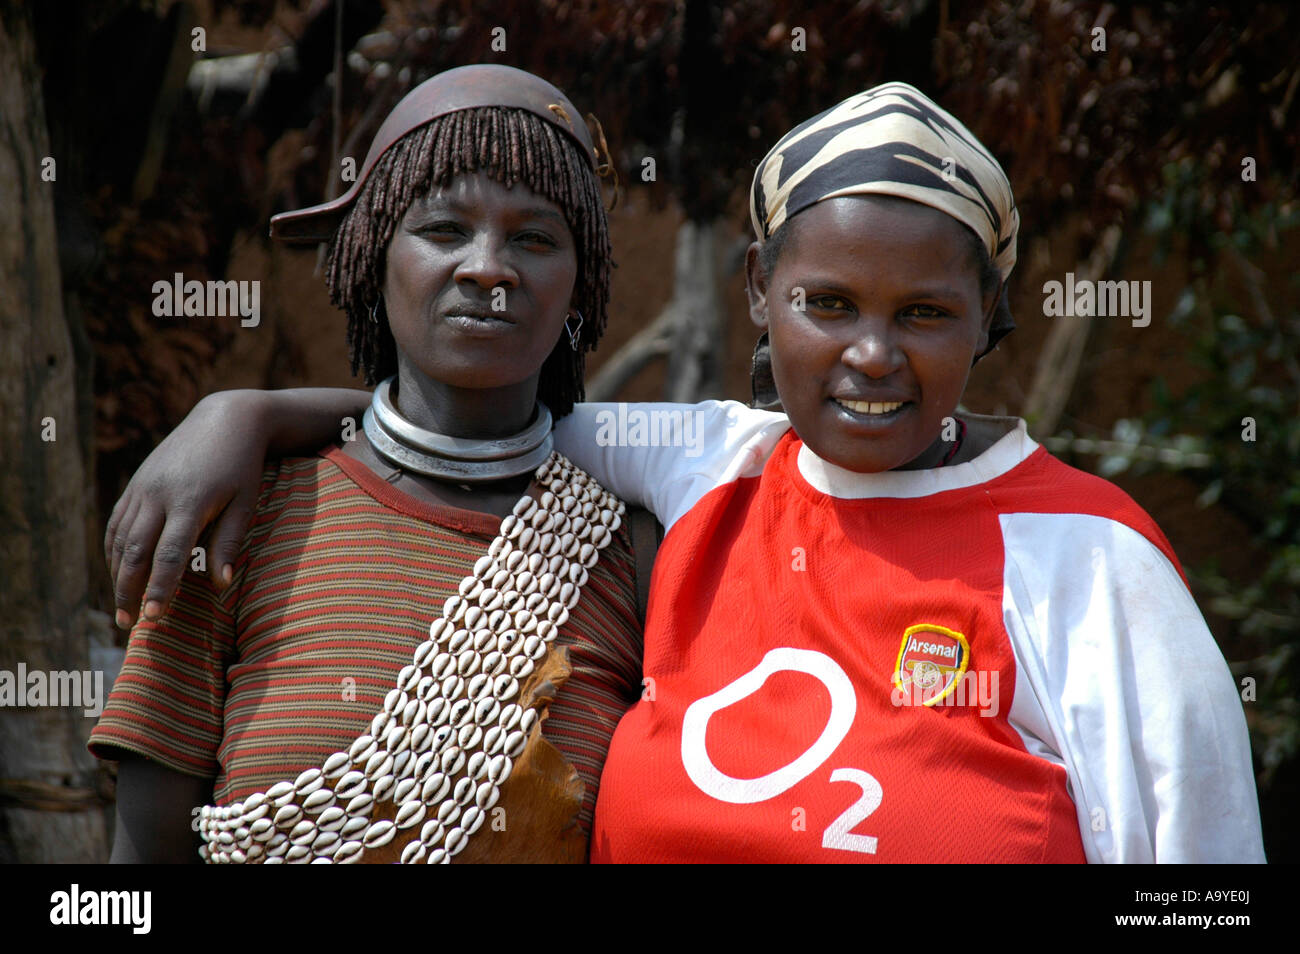 Zwei Freundinnen eine mit traditionellen Kauri Muscheln Schmuck gekleidet andererseits in einem modernen O2 T-shirt Markt Keyafer Äthiopien Stockfoto